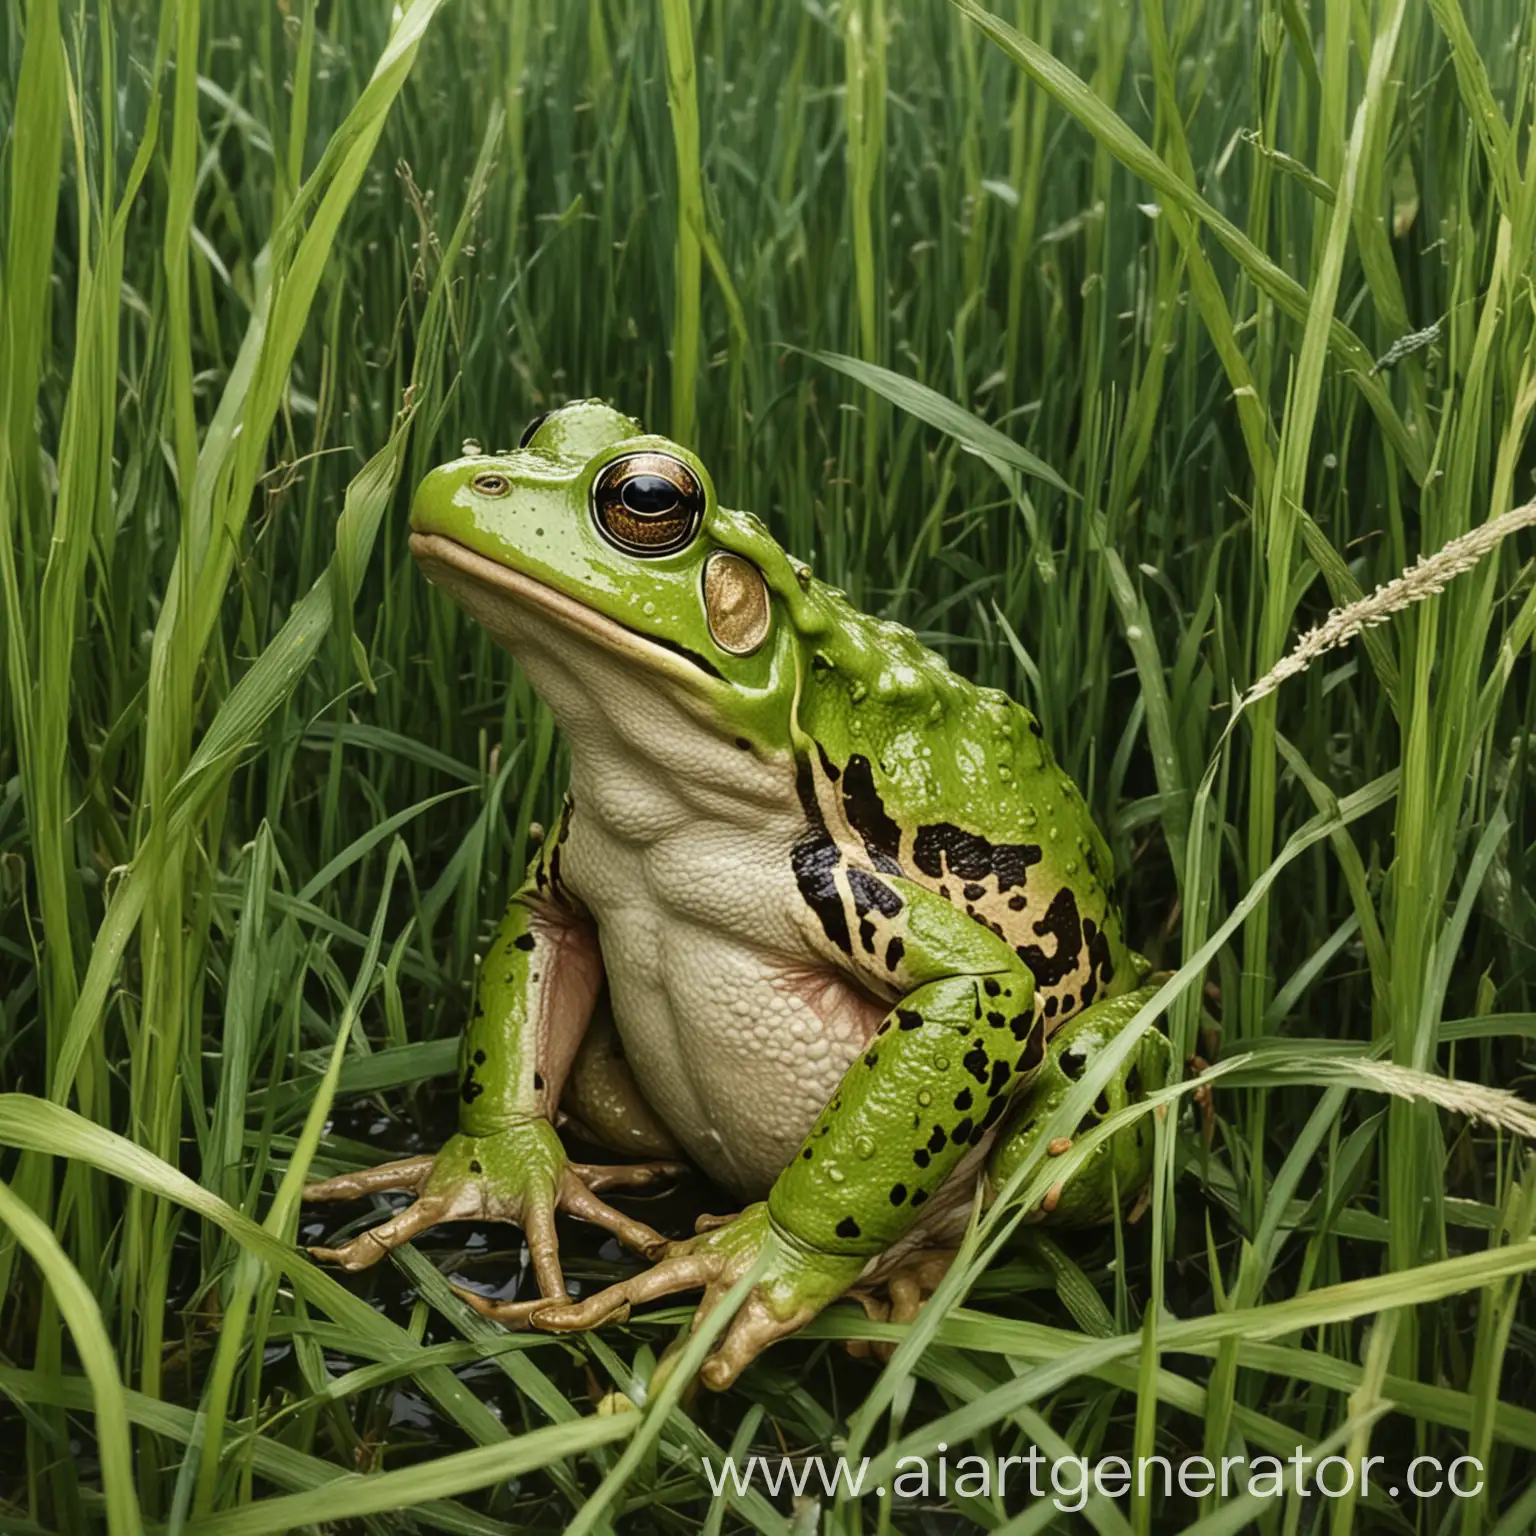 Нарисуй лягушку, которая сидит в густой траве. Лягушка должна быть хорошо замаскирована, чтобы ее было трудно заметить. Трава должна быть пышной и зеленой, а лягушка должна сливаться с окружающей средой, используя свои природные цвета и узоры.